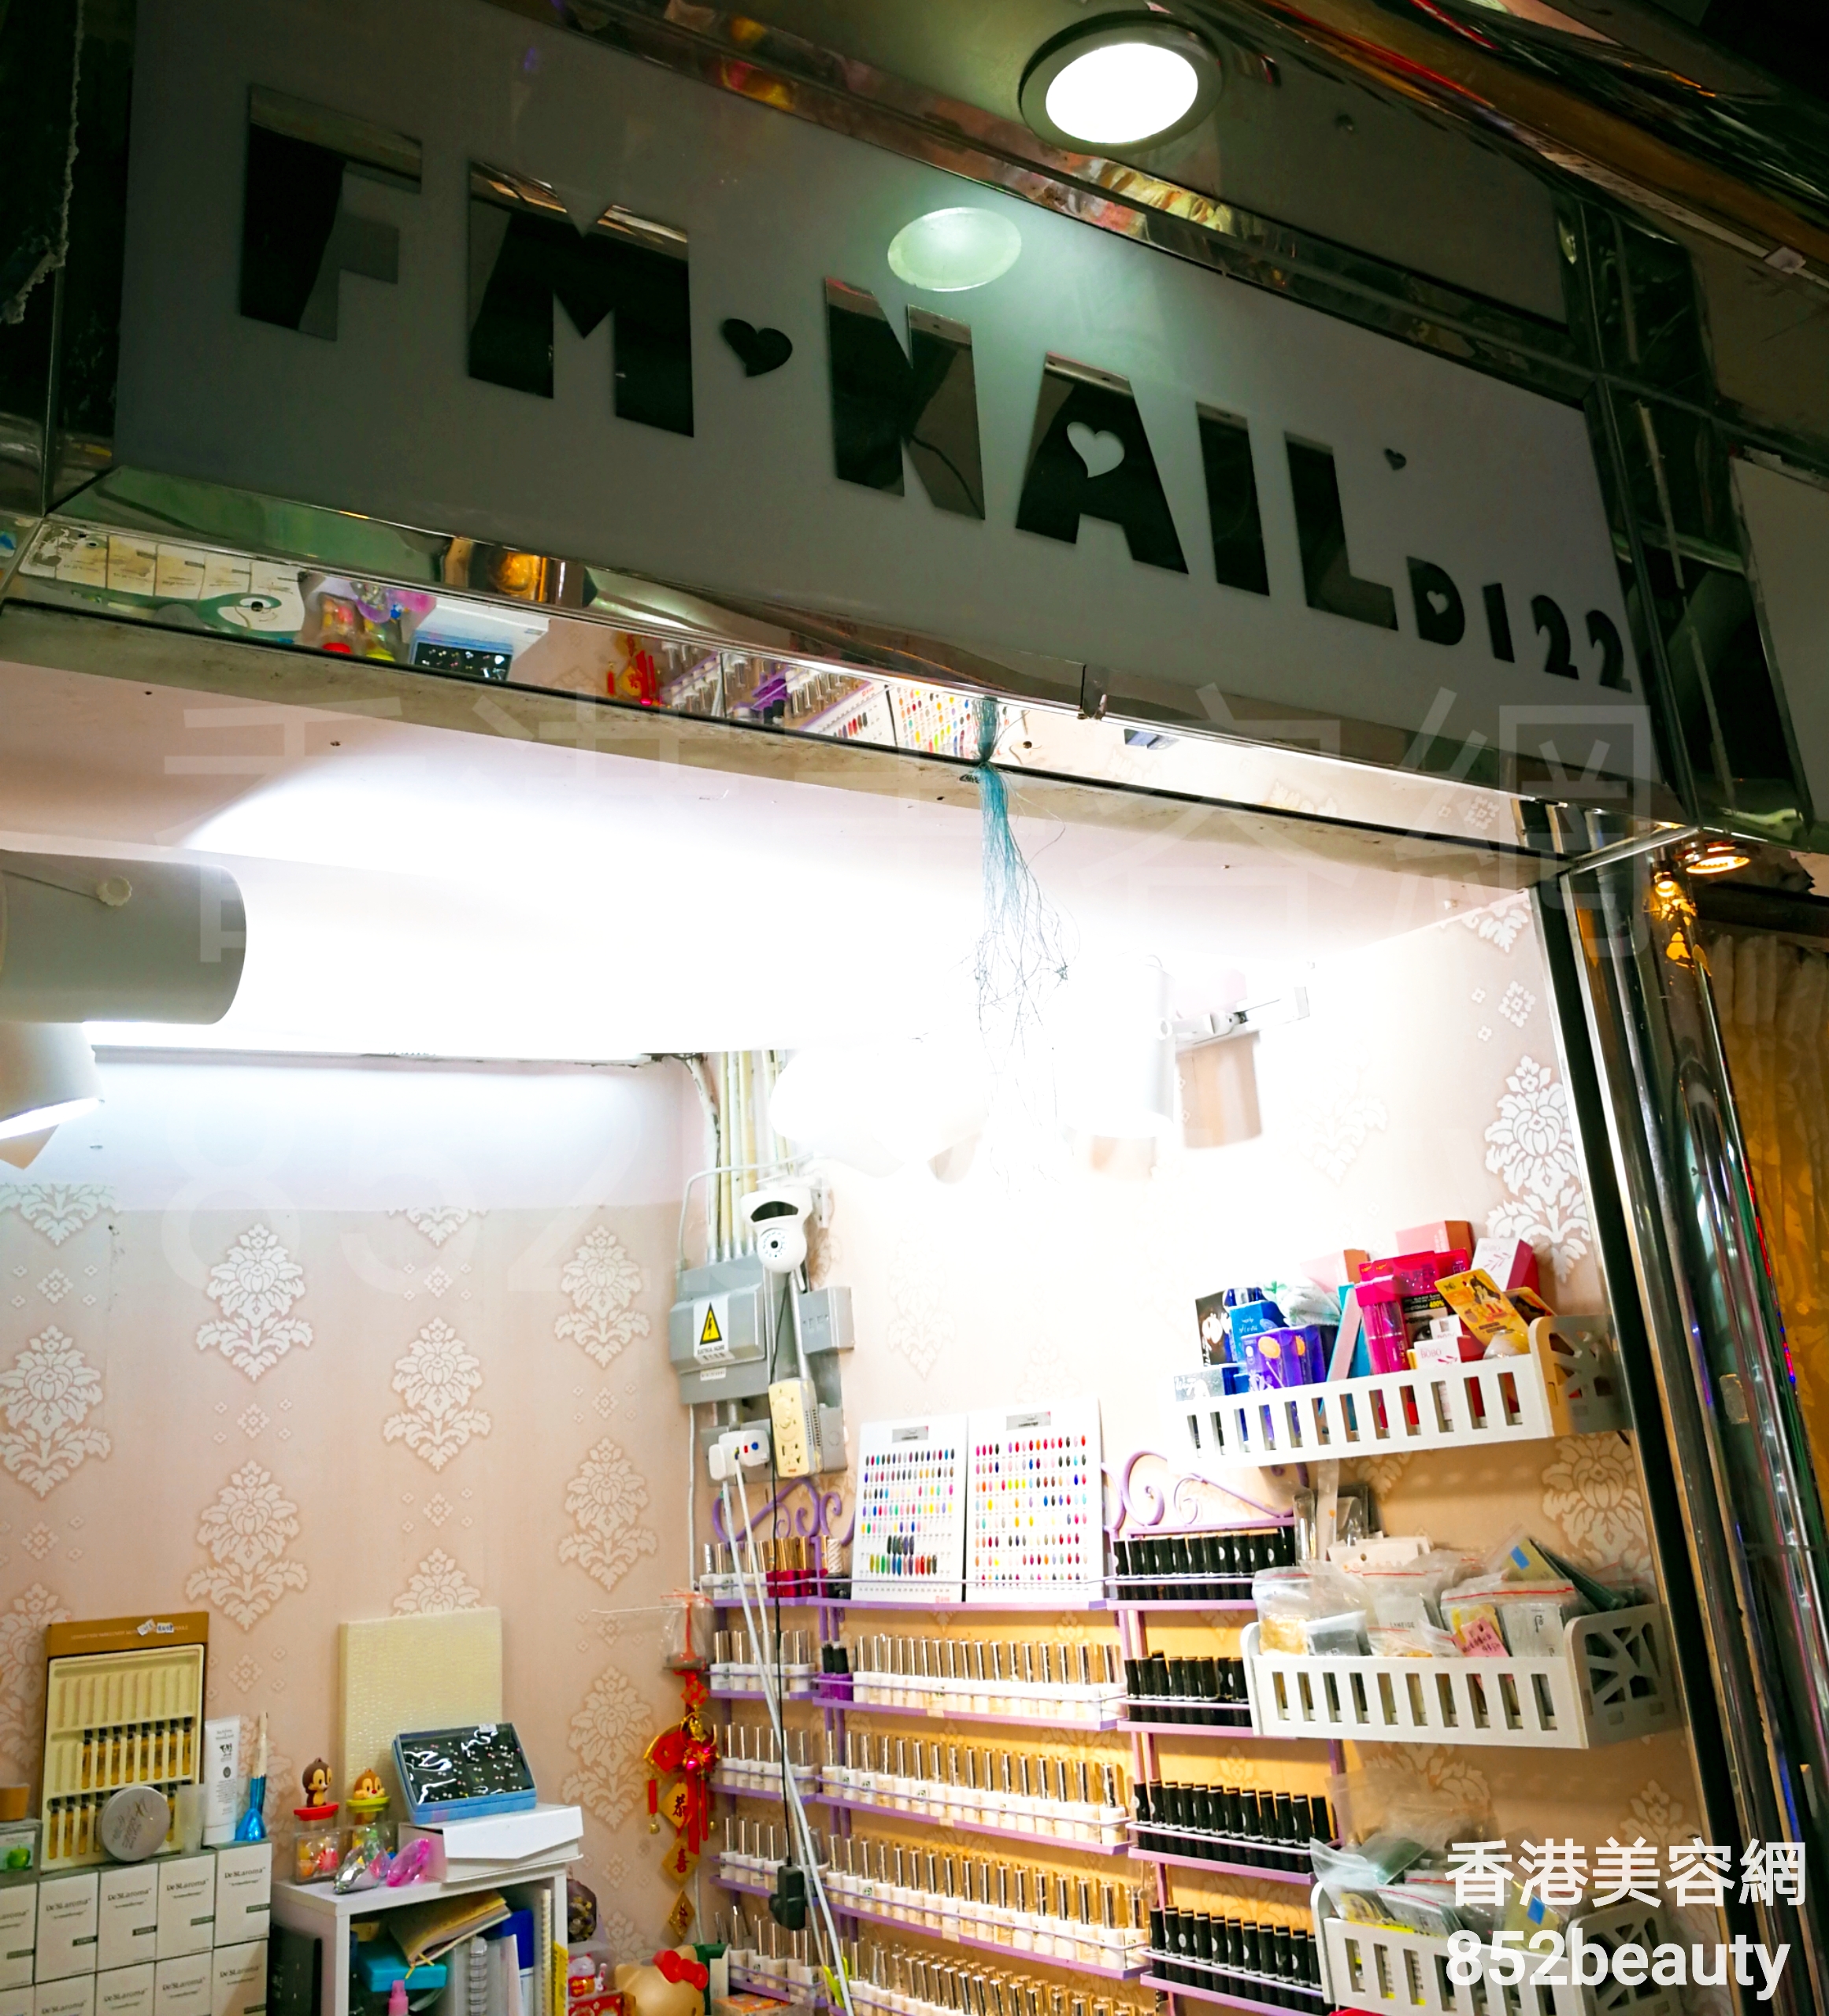 美容院 Beauty Salon: FM NAIL (美甲)